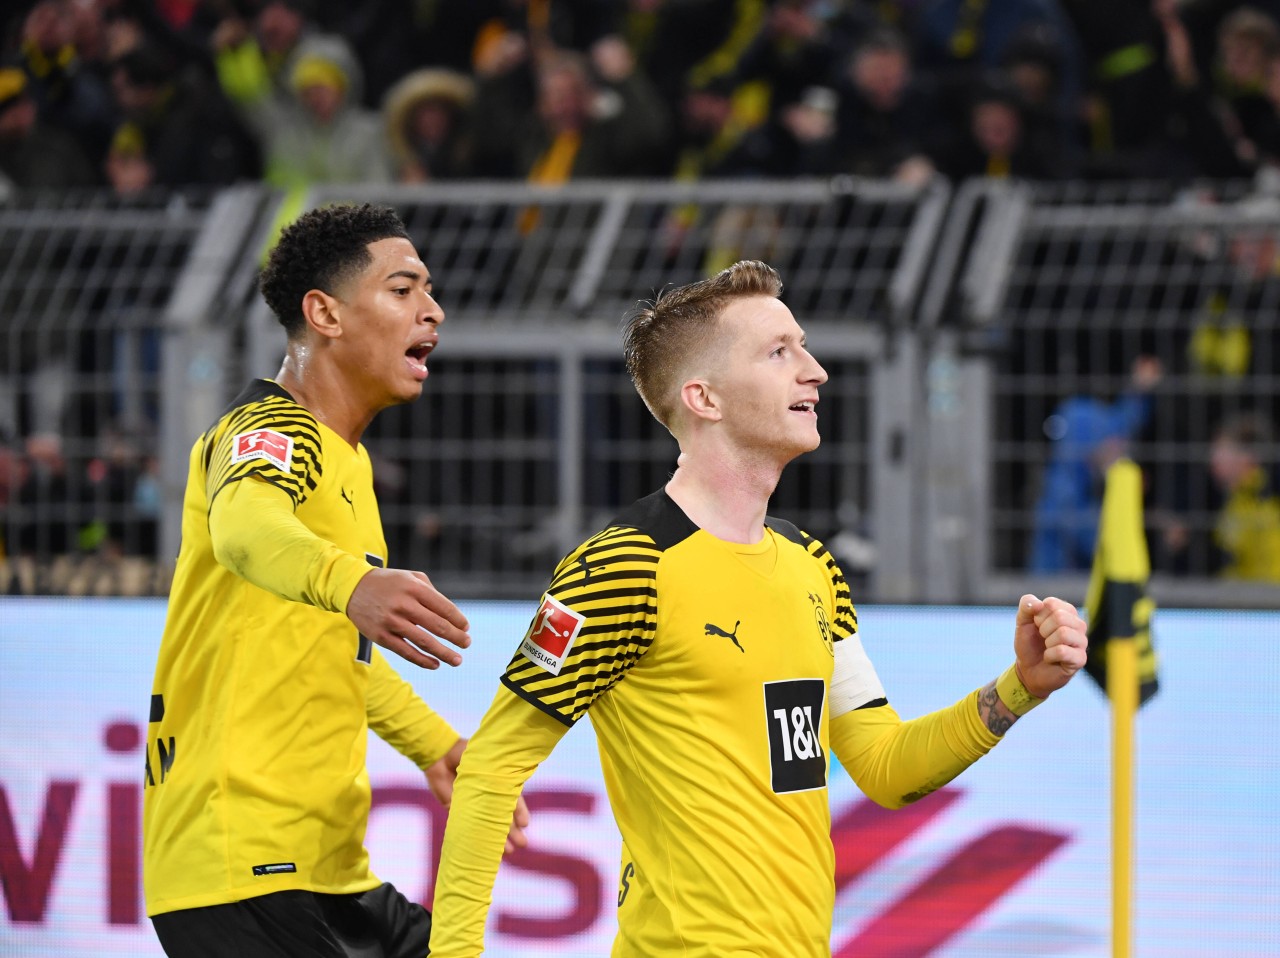 Muss Borussia Dortmund im Topspiel gegen den FC Bayern München auf einen Leistungsträger verzichten?